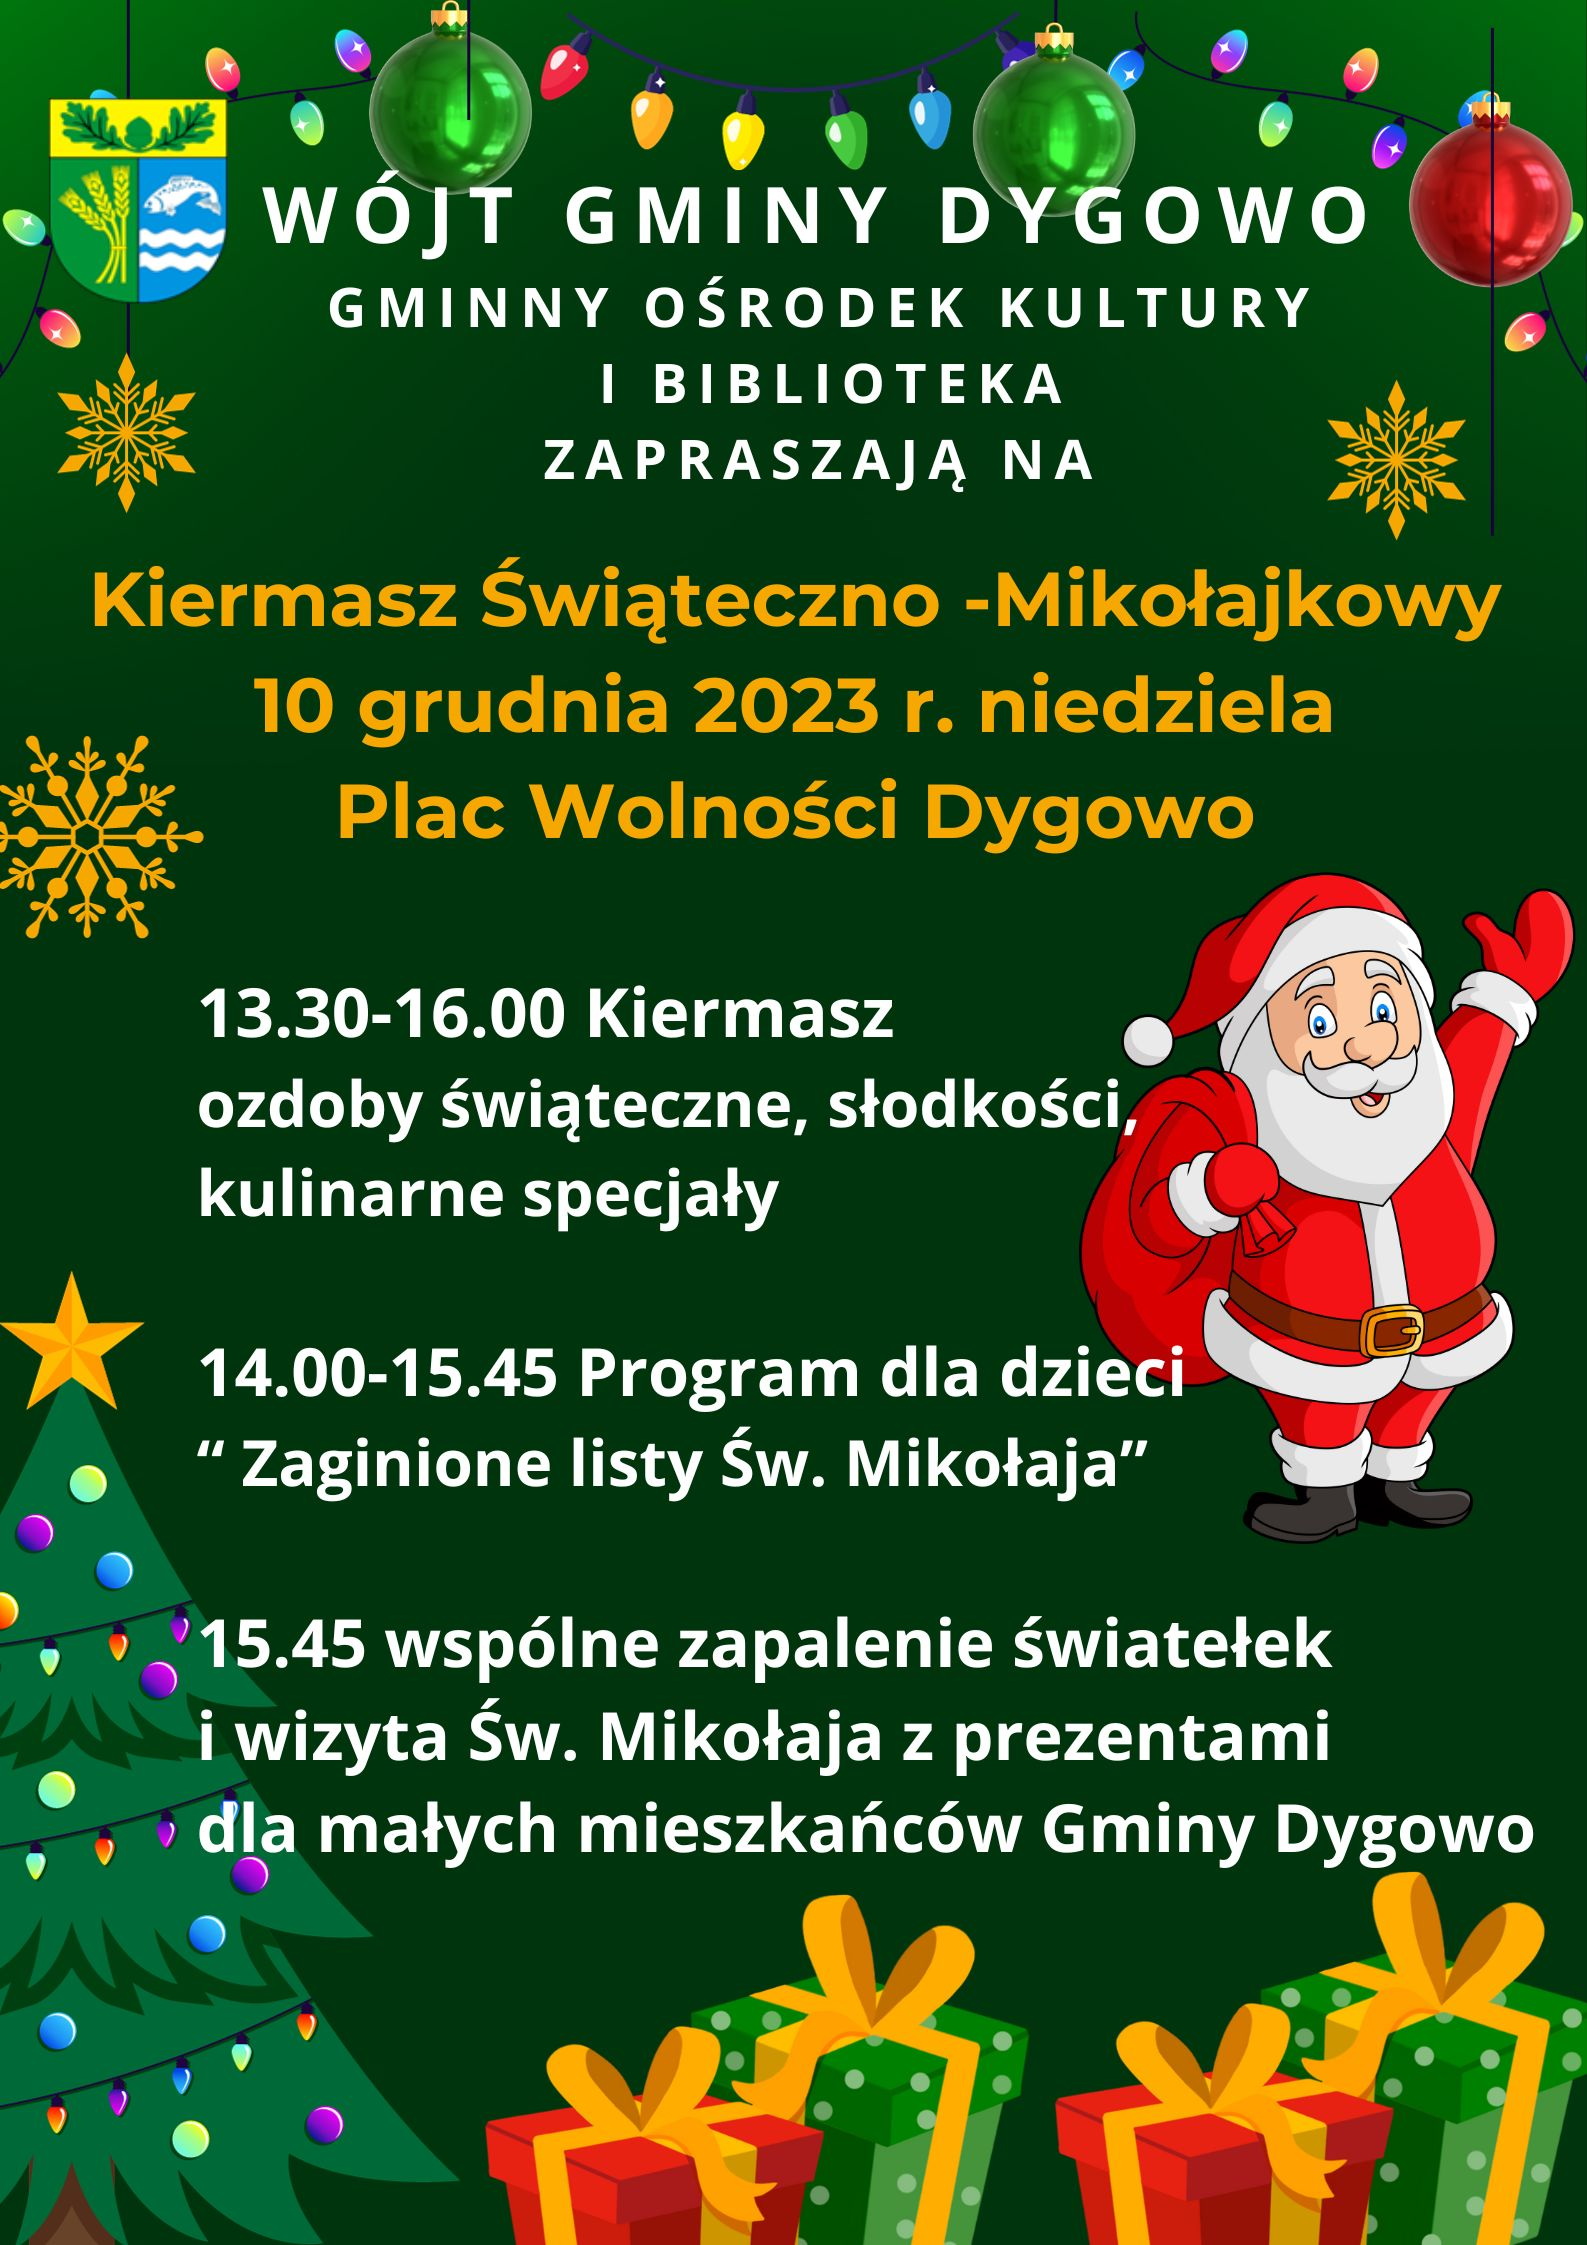 Kiermasz Świąteczno - Mikołajkowy